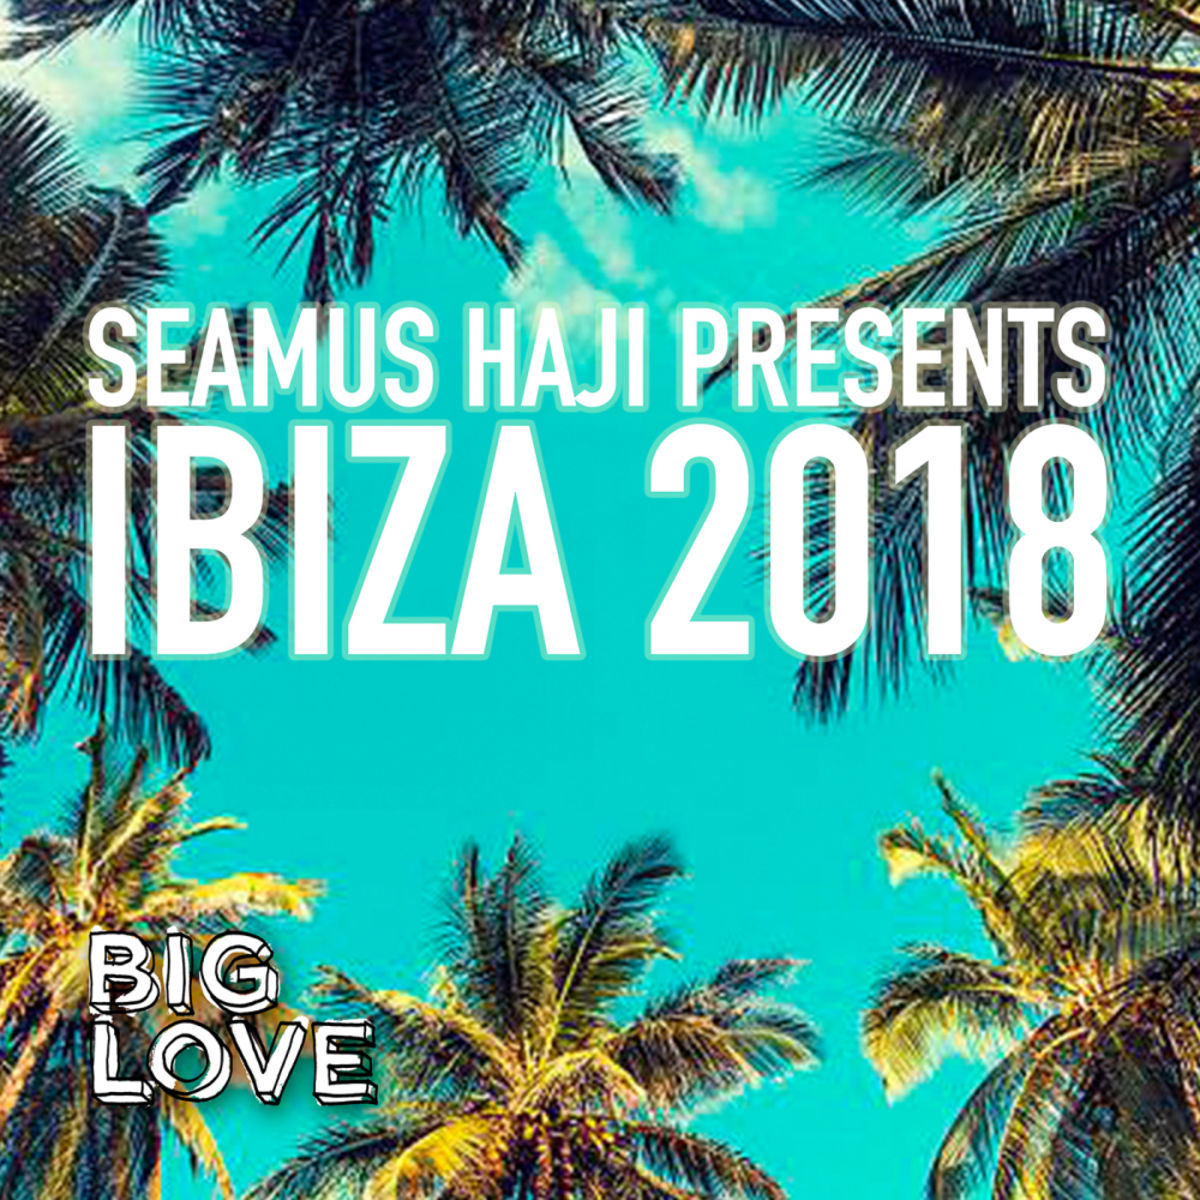 VA - Seamus Haji Presents Ibiza 2018 / Big Love